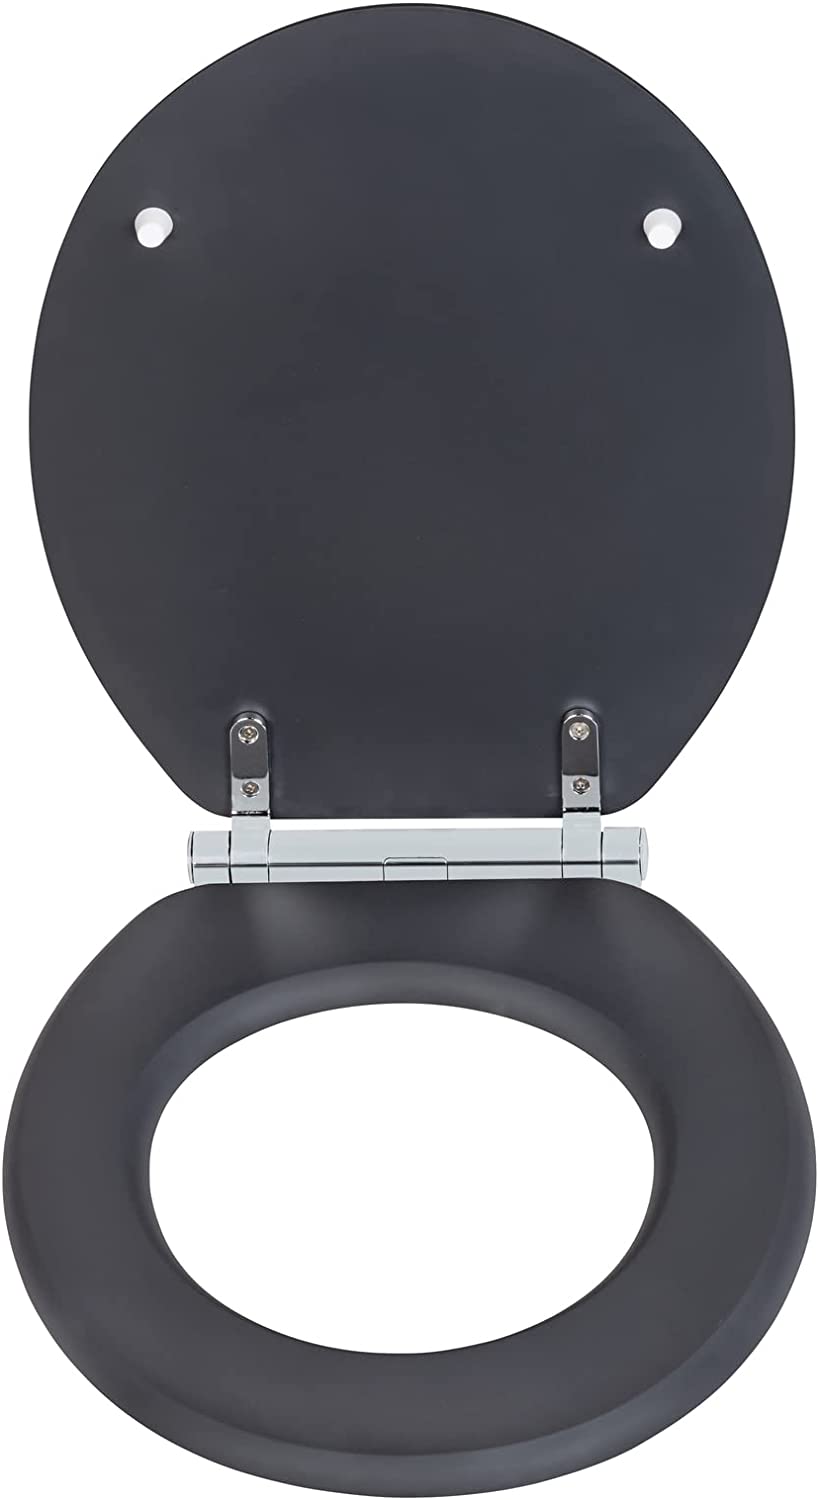 WC-Sitz Morra, Toilettensitz mit durchgehendem Scharnier & Absenkautomatik aus mehrfach lackiertem FSC®-zertifiziertem MDF, WC-Deckel mit Fix-Clip Hygienebefestigung, 35 x 42 cm, Anthrazit matt